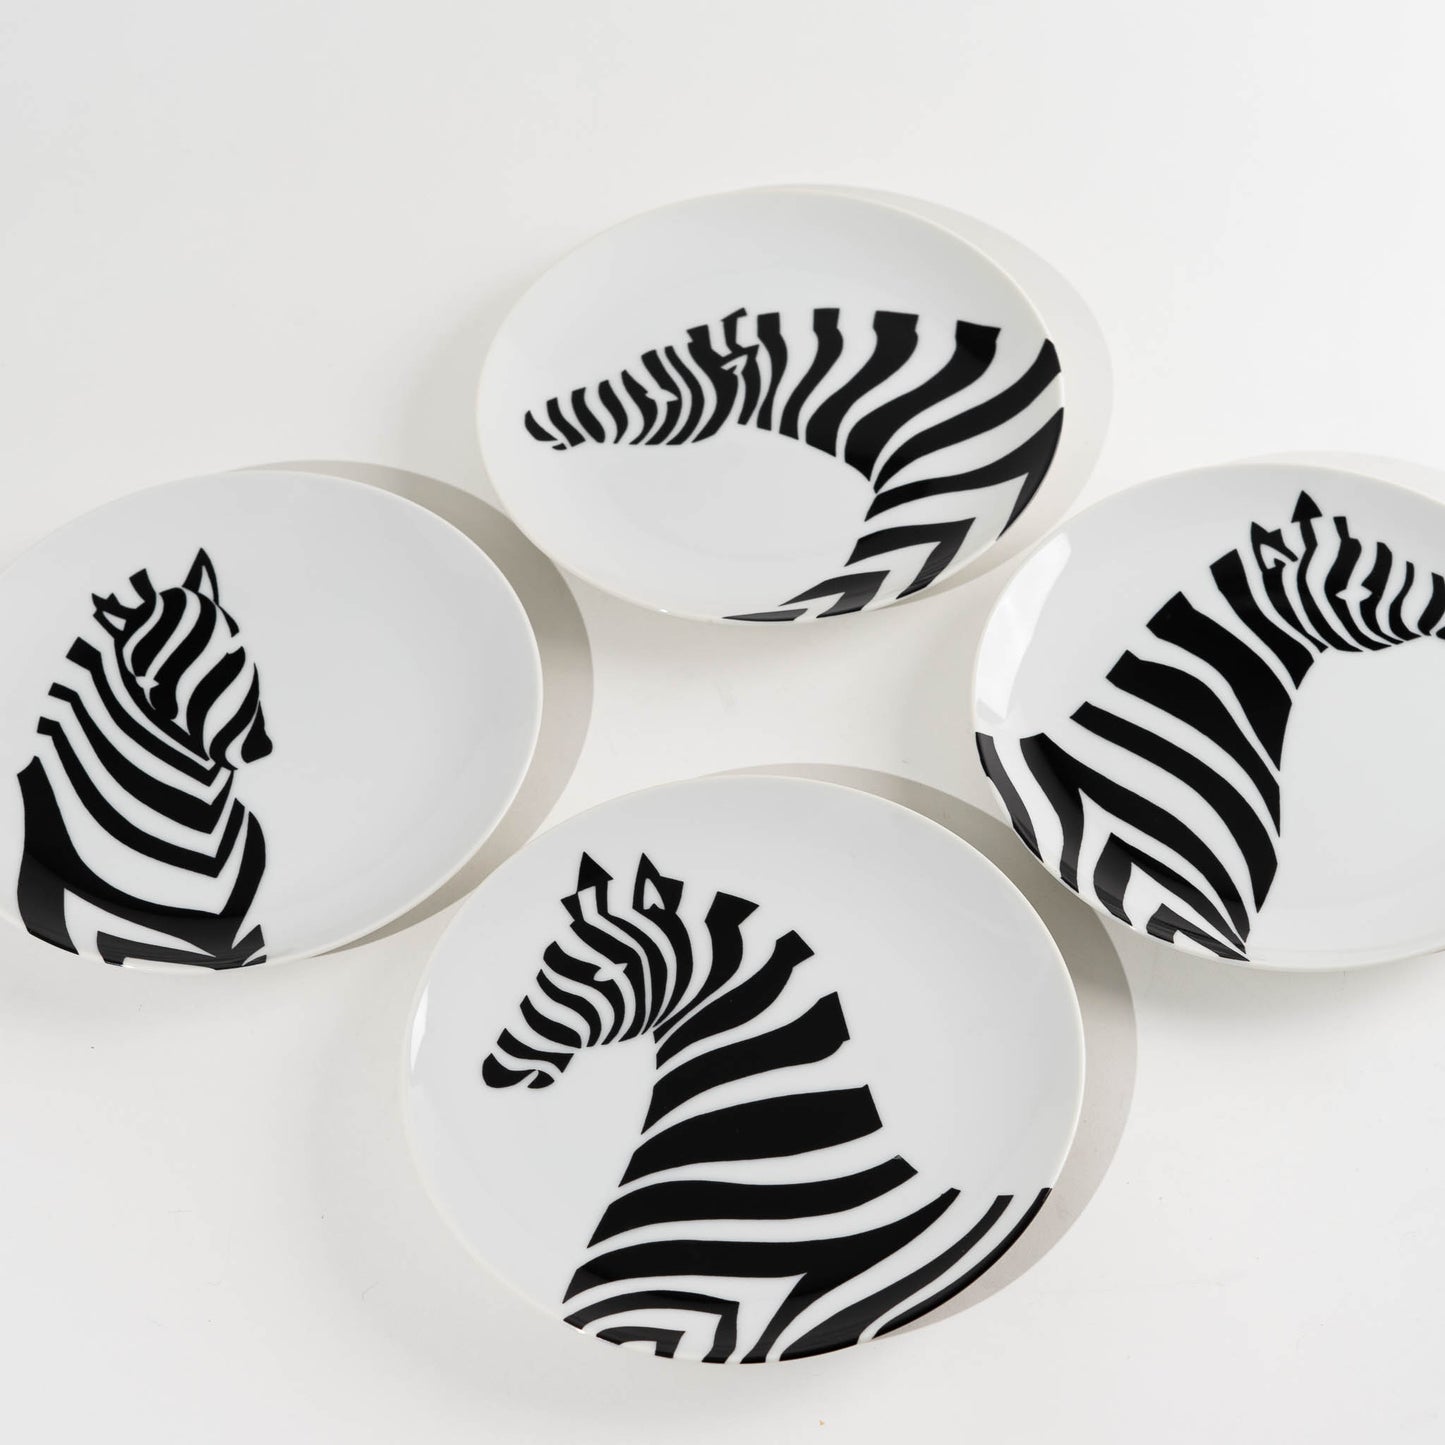 Vingage Fitz and Floyd Zebra Plates - Set of 4